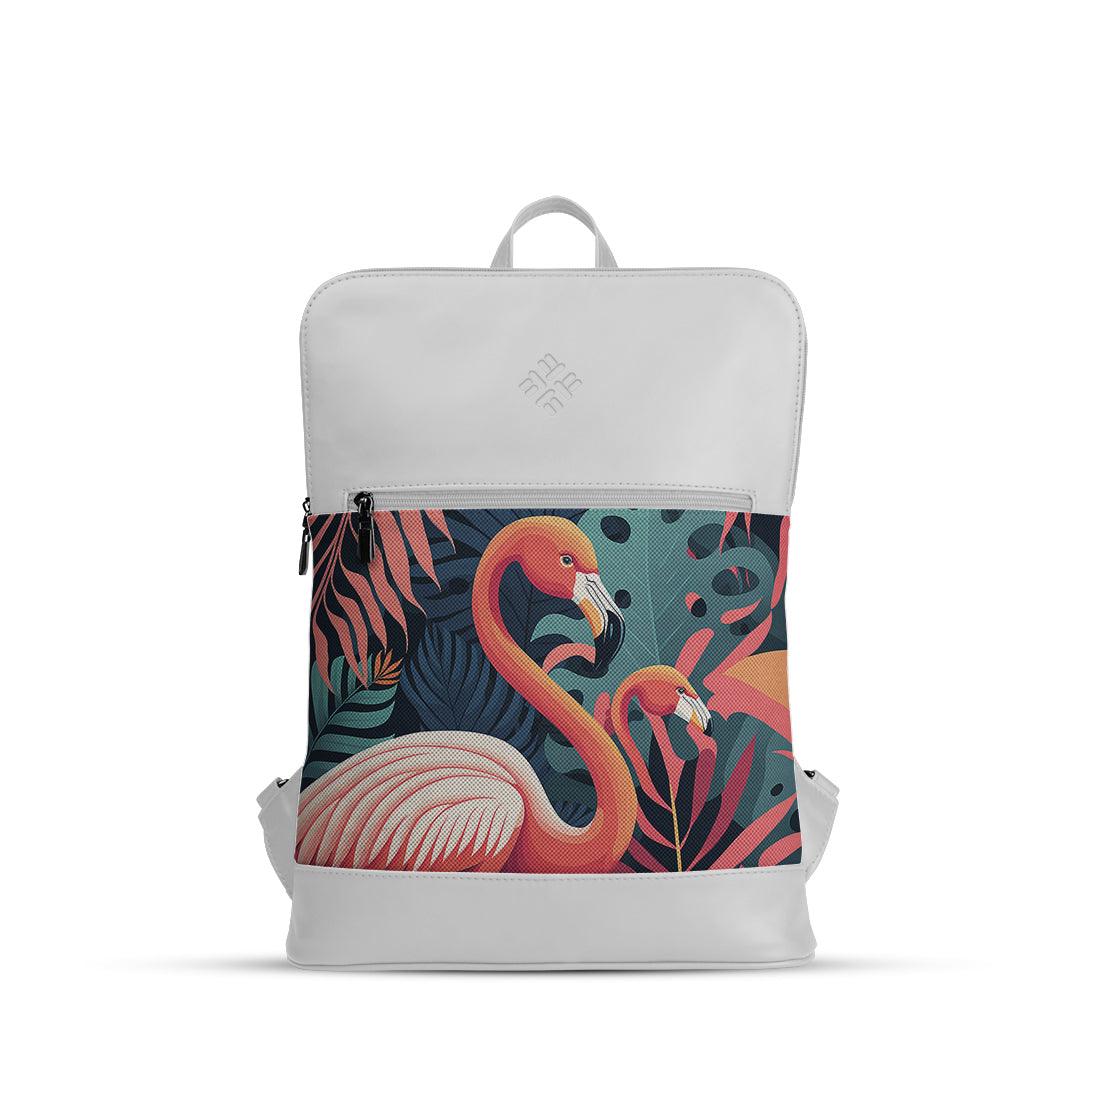 White Orbit Laptop Backpack Flamingo - CANVAEGYPT